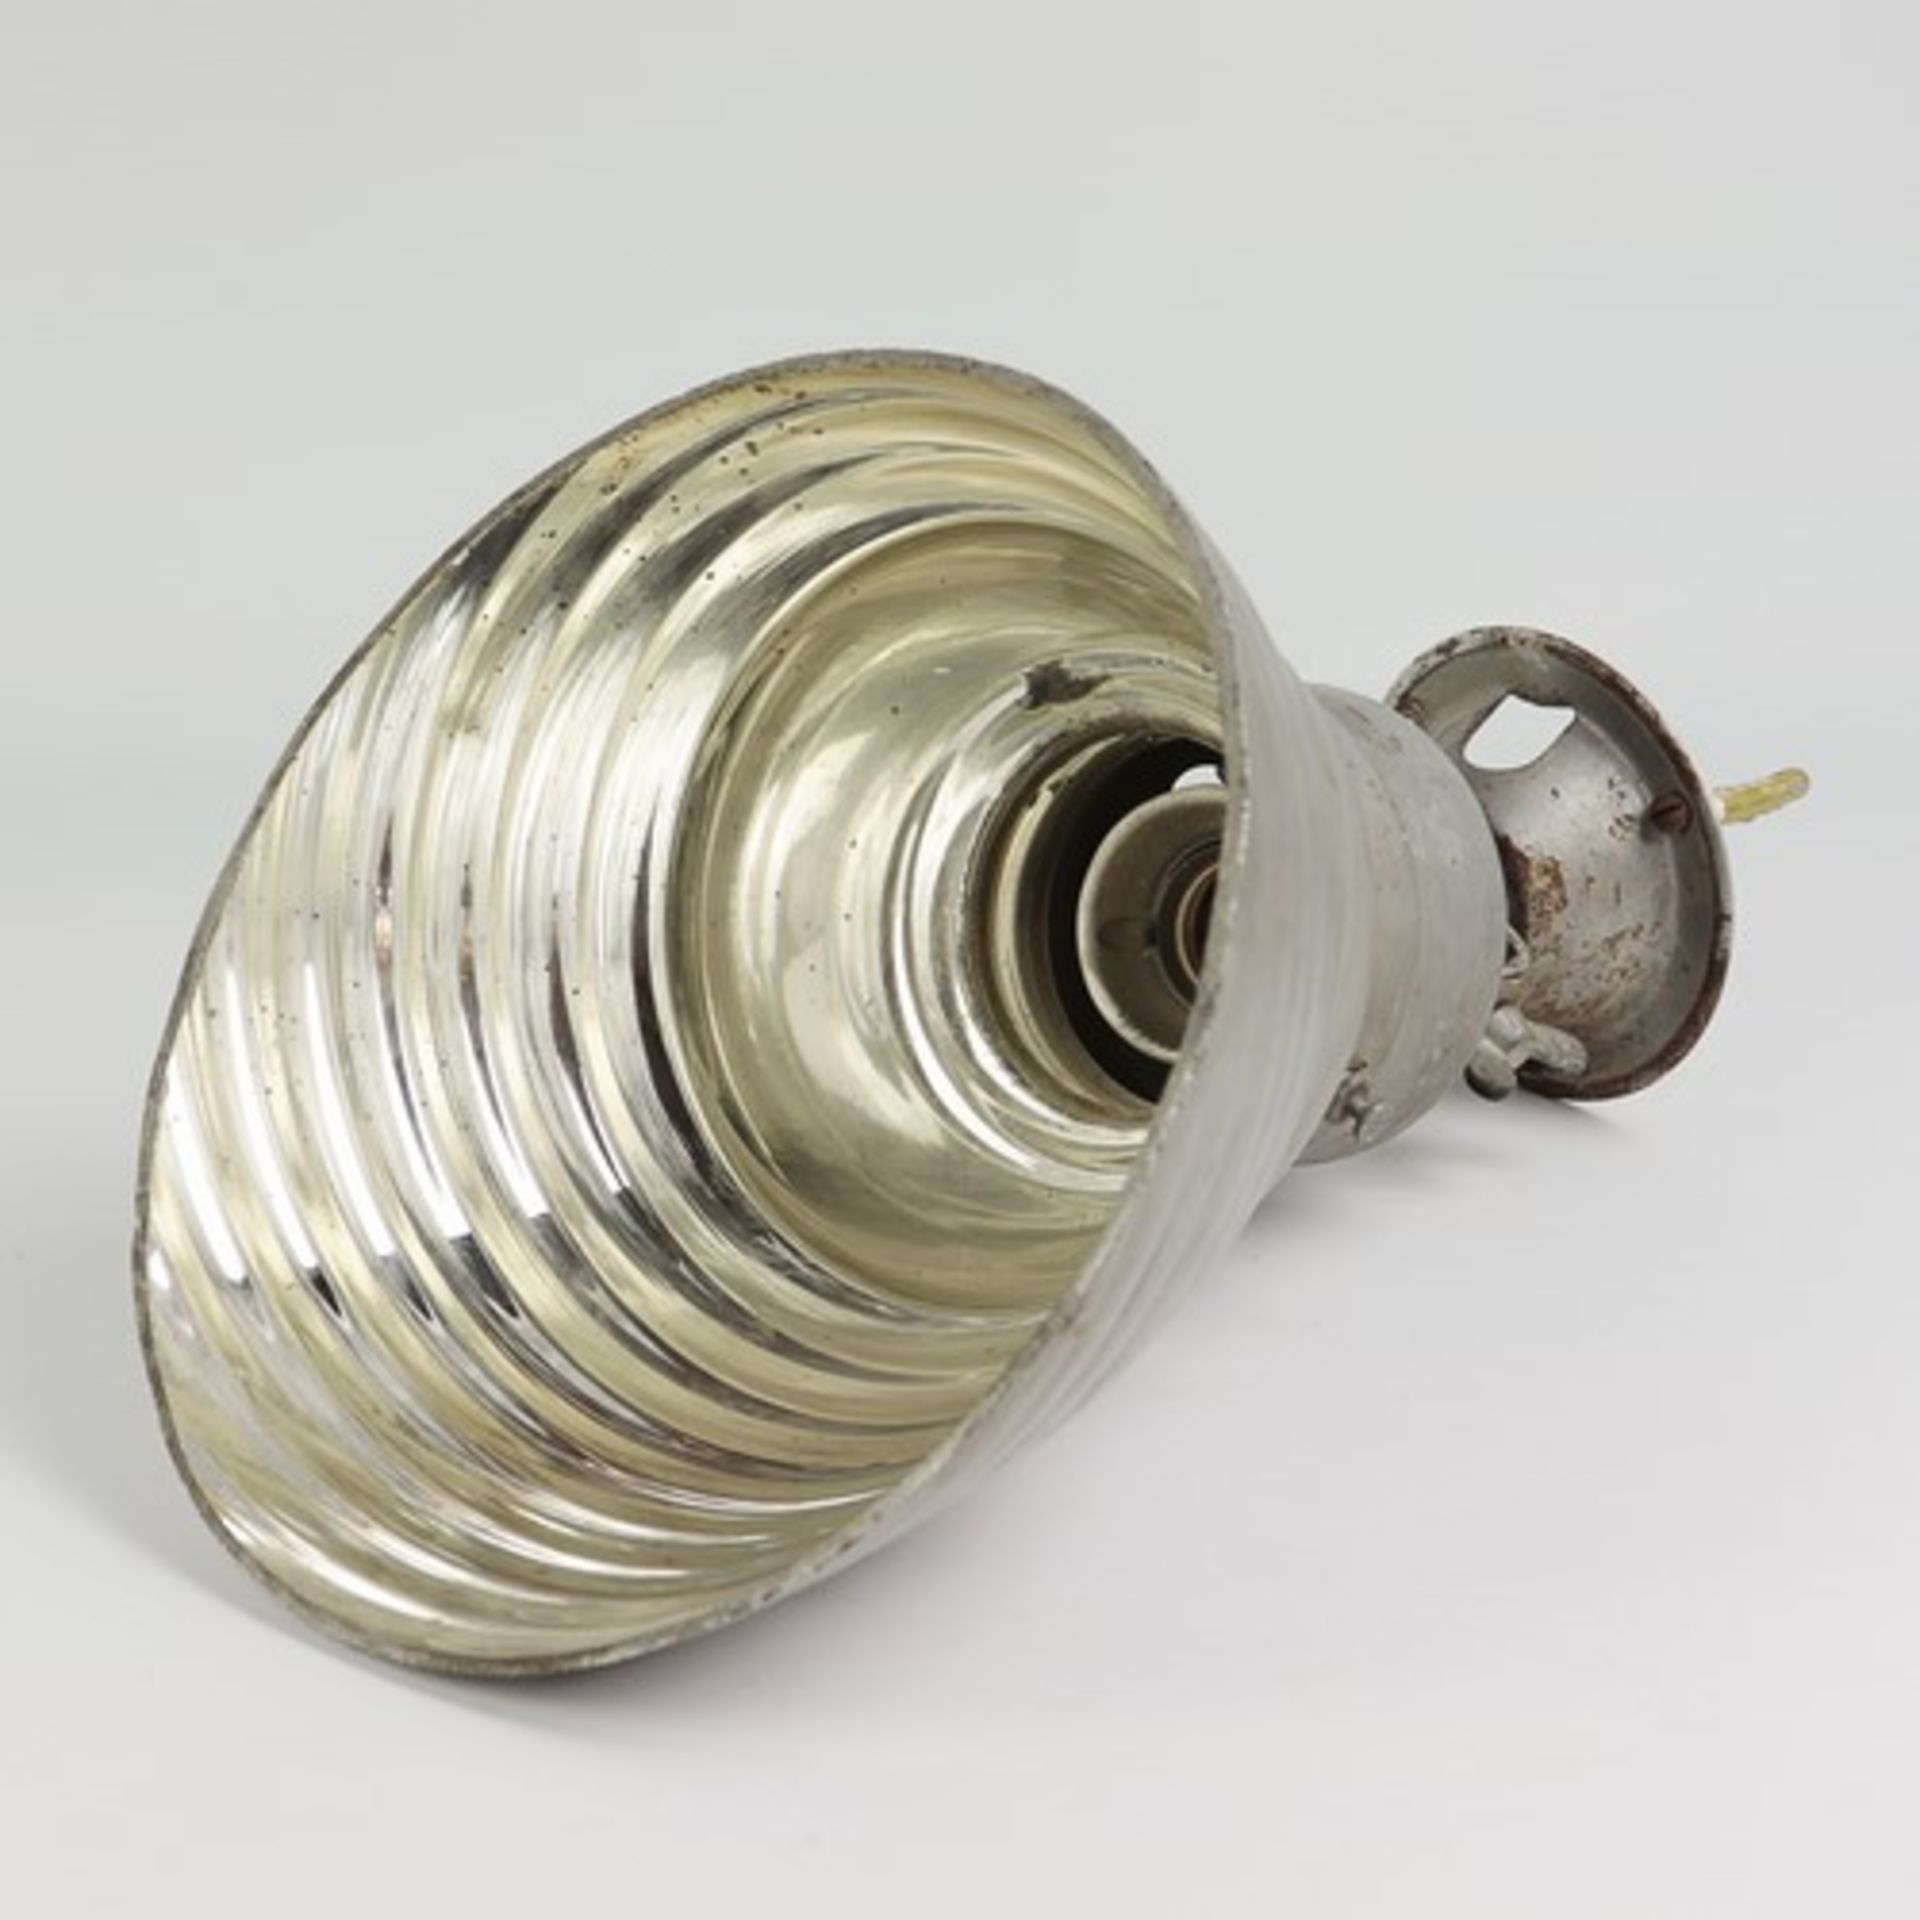 Industrielampe - Zeissum 1930 Berlin, Deckenlampe gem. Zeiss Ikon J.S.5 A8, Metall/Glas, einflammig, - Bild 2 aus 4